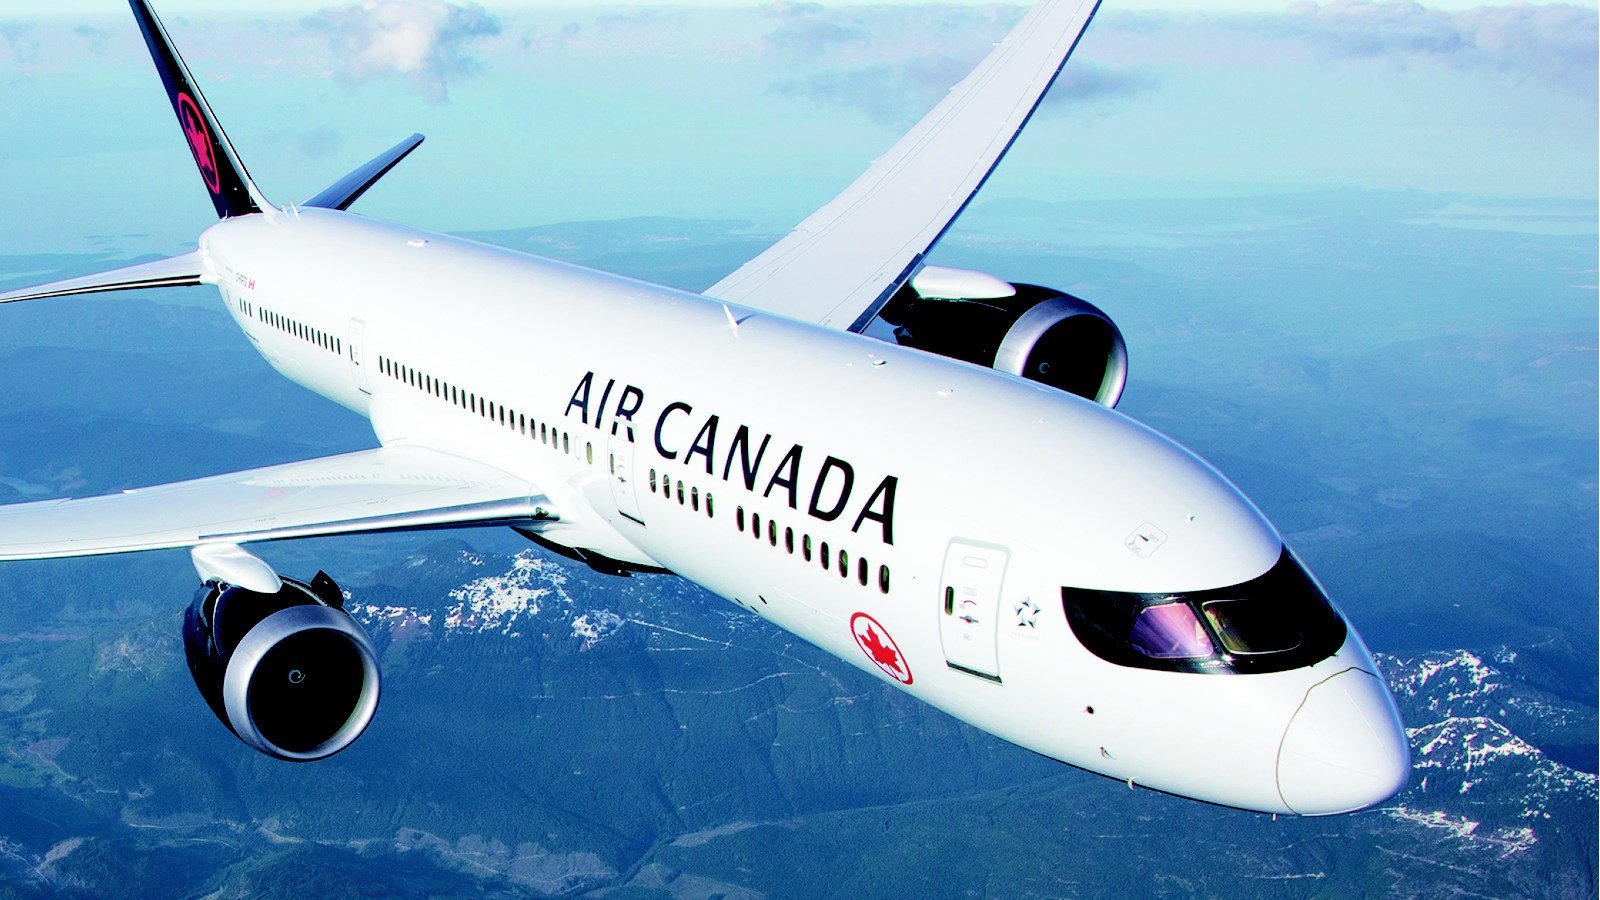 BianLian勒索组织声称最近加拿大航空公司遭到入侵
